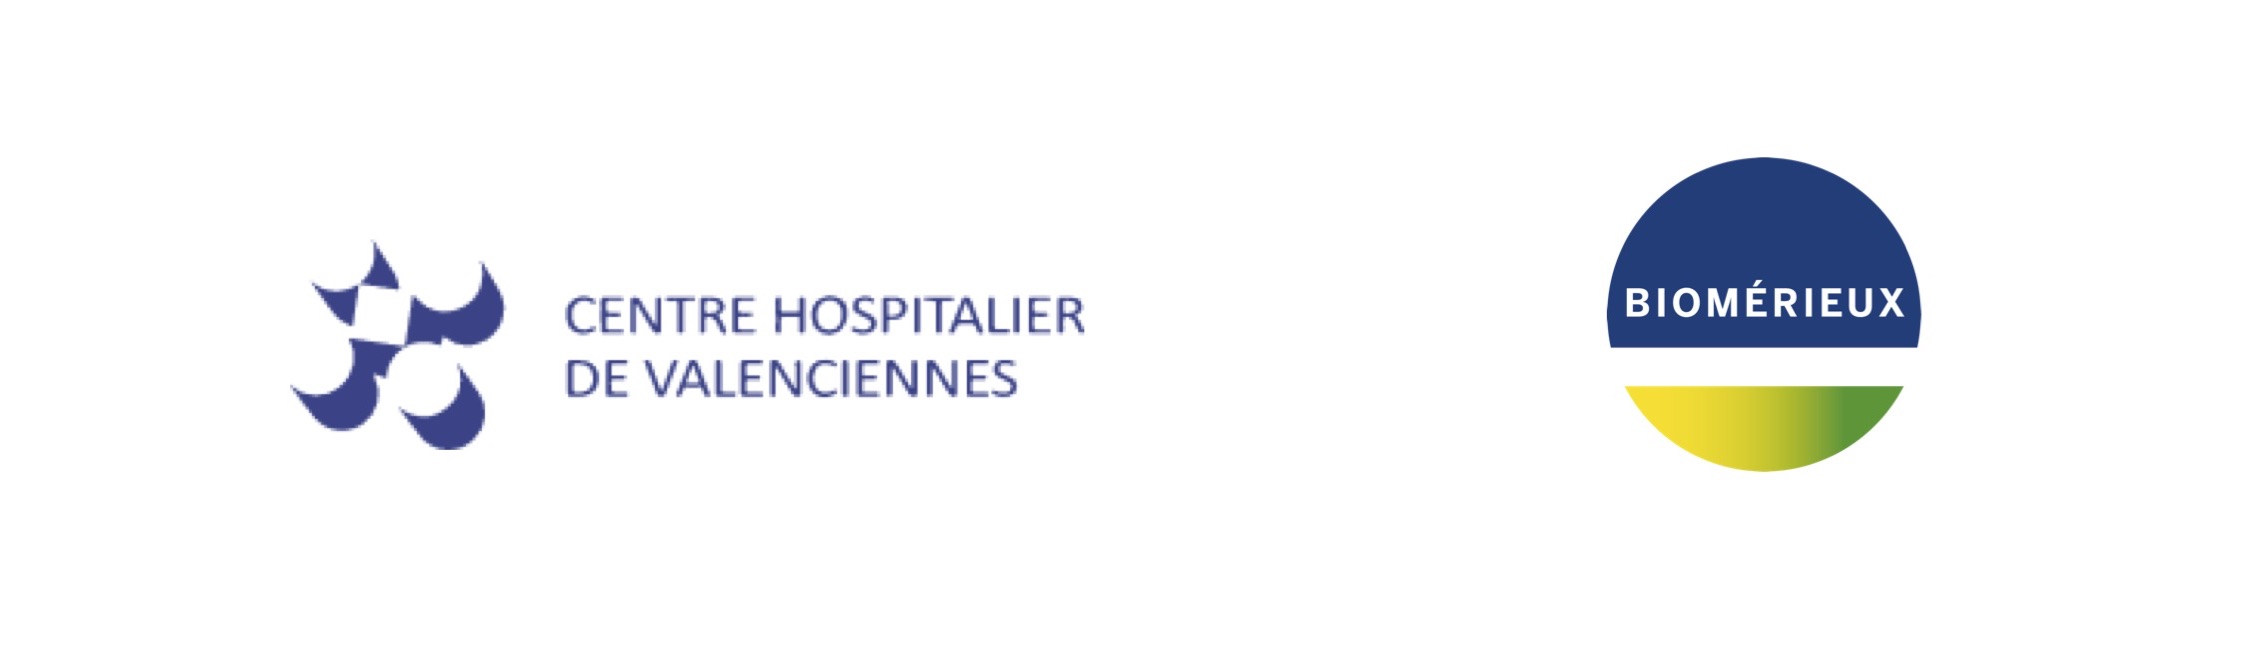 Le Centre Hospitalier de Valenciennes et bioMérieux inaugurent un laboratoire de microbiologie de pointe pour le diagnostic des maladies infectieuses au service de la lutte contre l’antibiorésistance